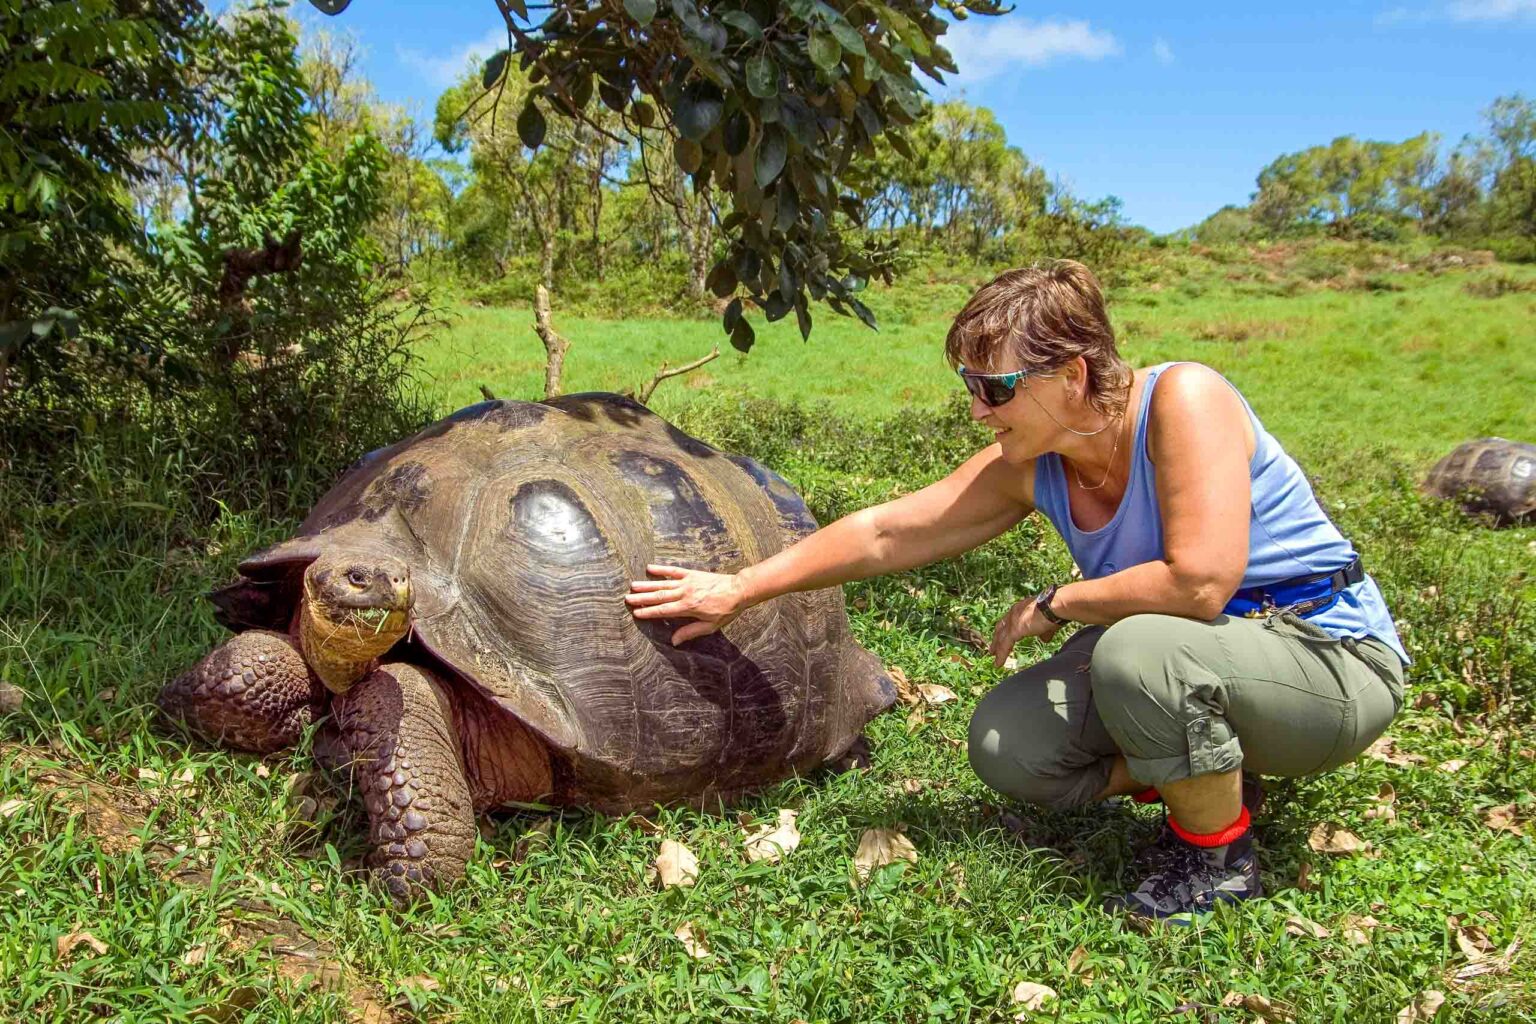 A tourist alongside a giant tortoise.